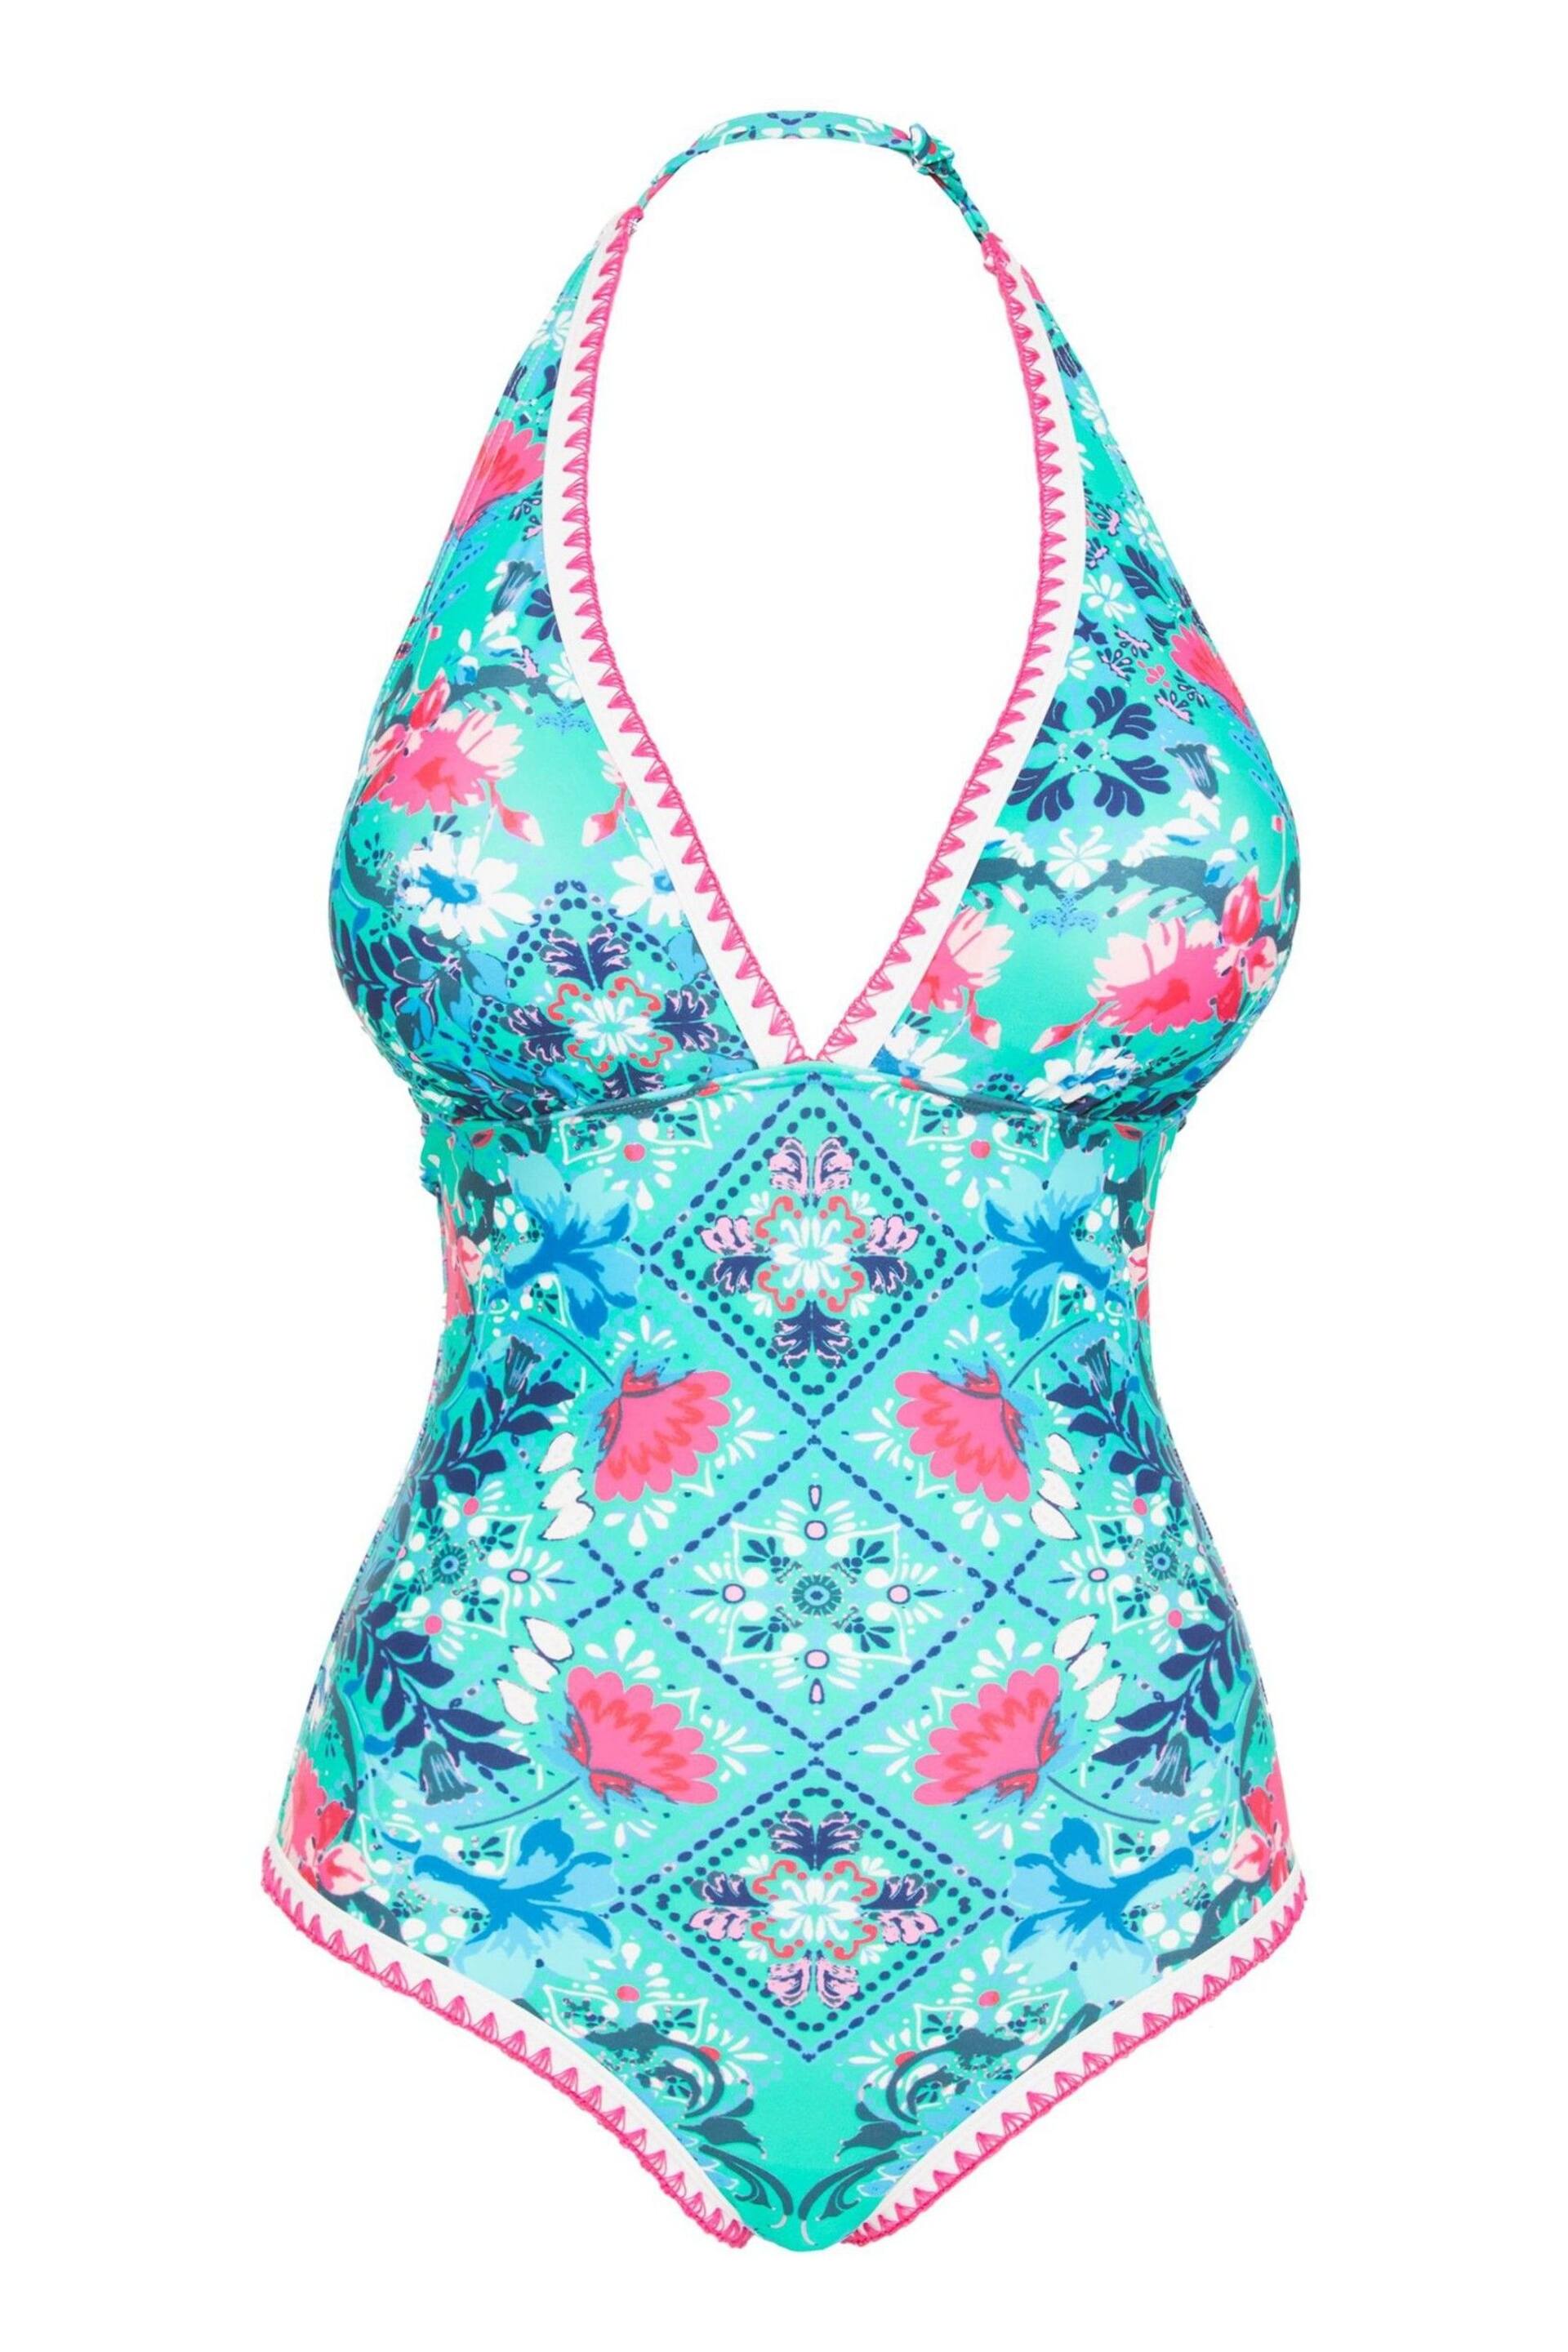 Figleaves Blue & Pink Floral Print Frida Halter Swimsuit - Image 5 of 5